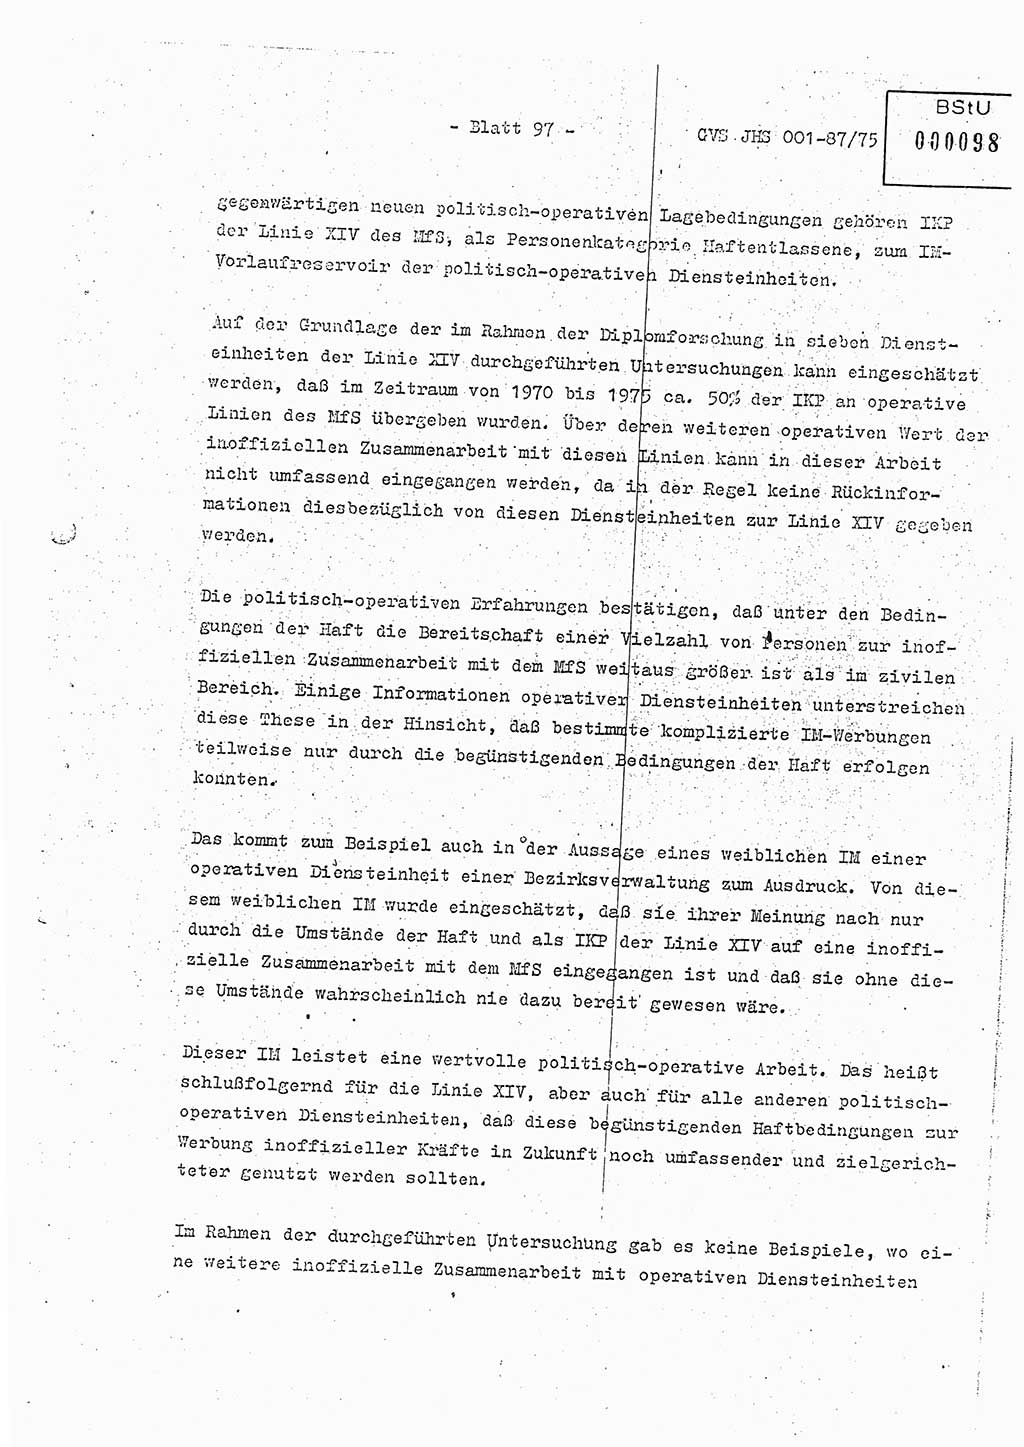 Diplomarbeit Hauptmann Volkmar Heinz (Abt. ⅩⅣ), Oberleutnant Lothar Rüdiger (BV Lpz. Abt. Ⅺ), Ministerium für Staatssicherheit (MfS) [Deutsche Demokratische Republik (DDR)], Juristische Hochschule (JHS), Geheime Verschlußsache (GVS) o001-87/75, Potsdam 1975, Seite 97 (Dipl.-Arb. MfS DDR JHS GVS o001-87/75 1975, S. 97)